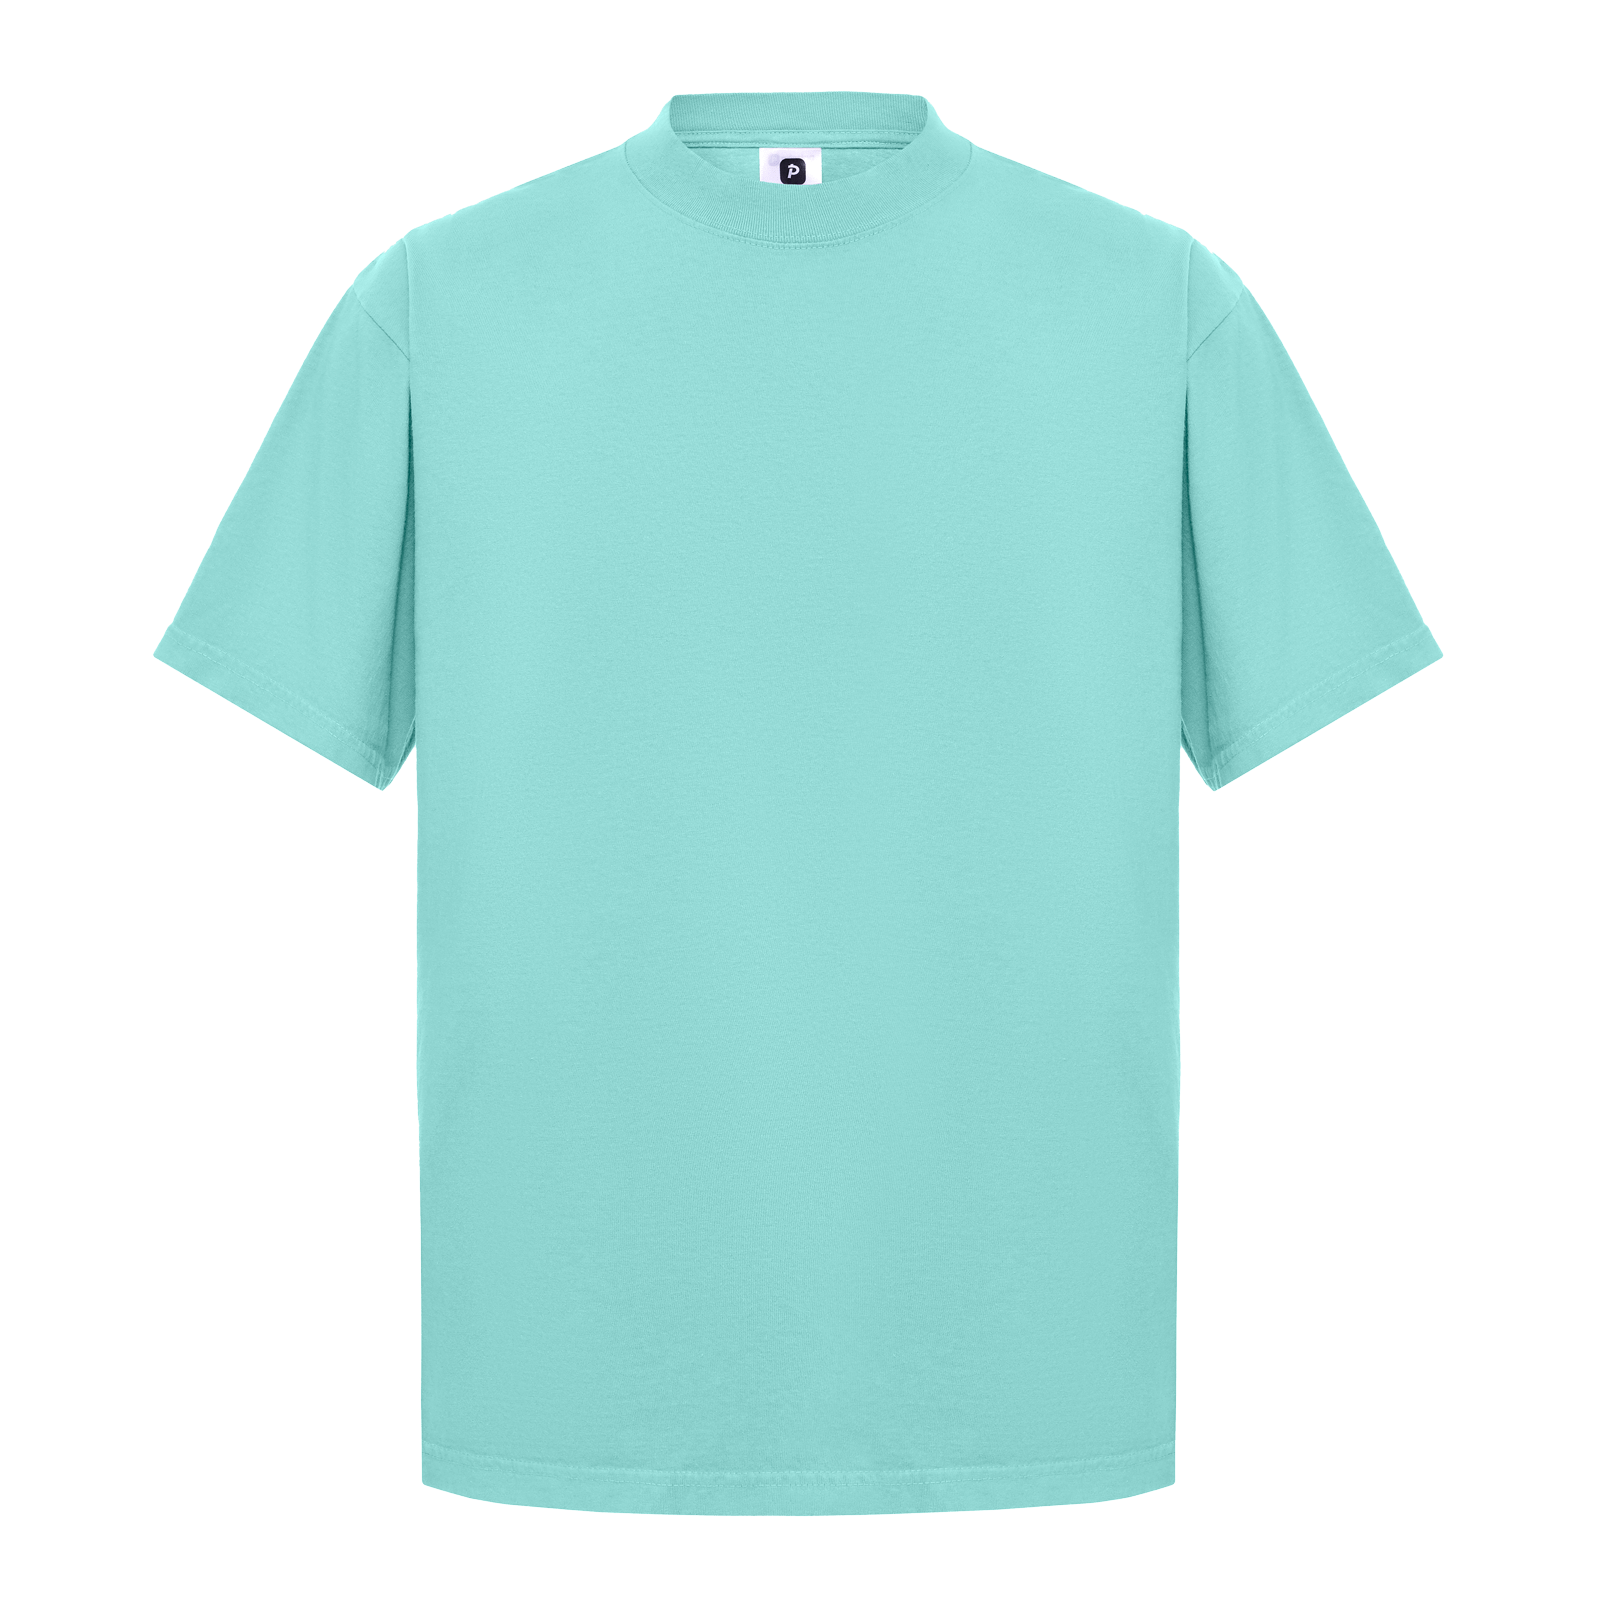 Garment Dye T-Shirt - Standard Size - Powder Blue